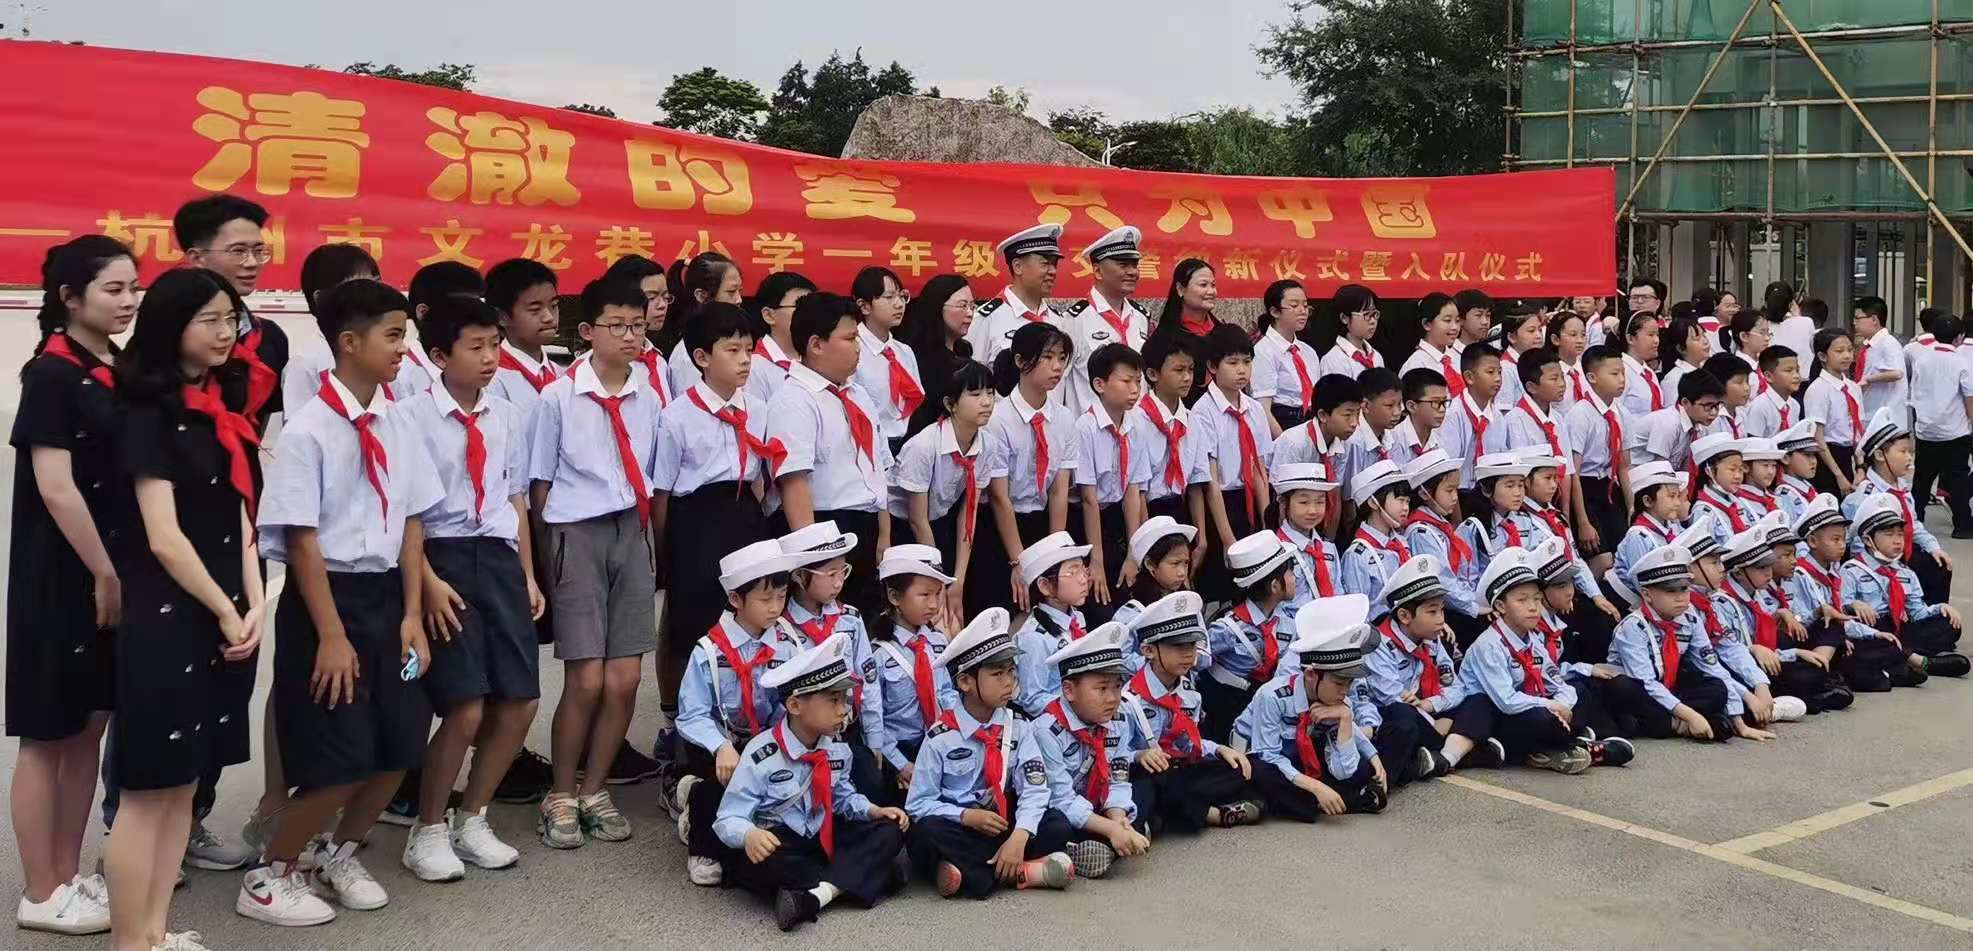 一份特别的儿童节礼物 杭州市文龙巷小学举行一年级小交警纳新仪式暨入队仪式